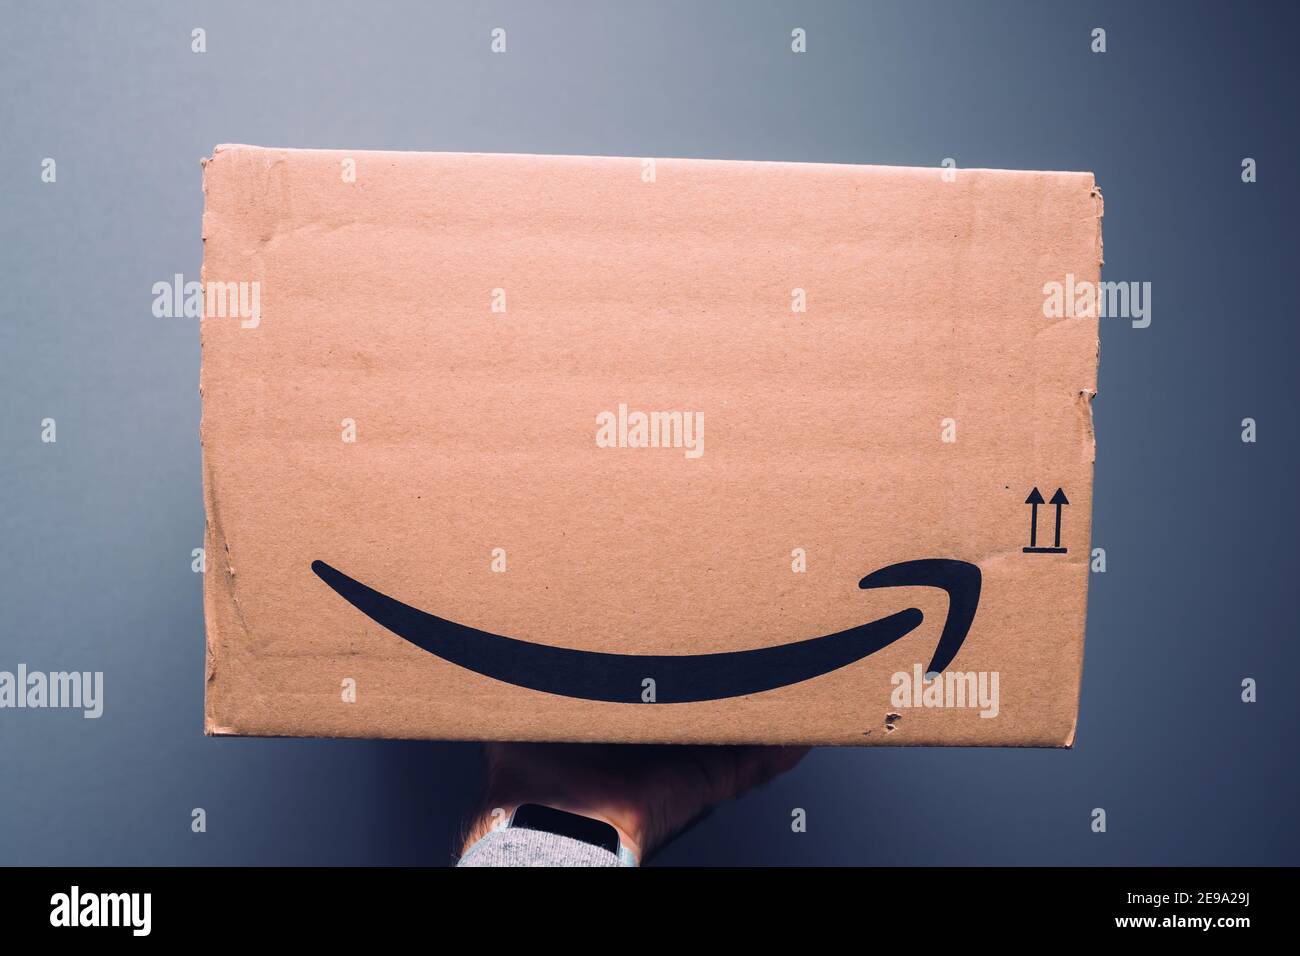 Paris, Frankreich - Oct 29, 2018: POV männliche Hand hält neues Paket von  Amazon Prime Karton Paket mit dem ikonischen Lächeln-Pfeil-Symbol geliefert  Stockfotografie - Alamy